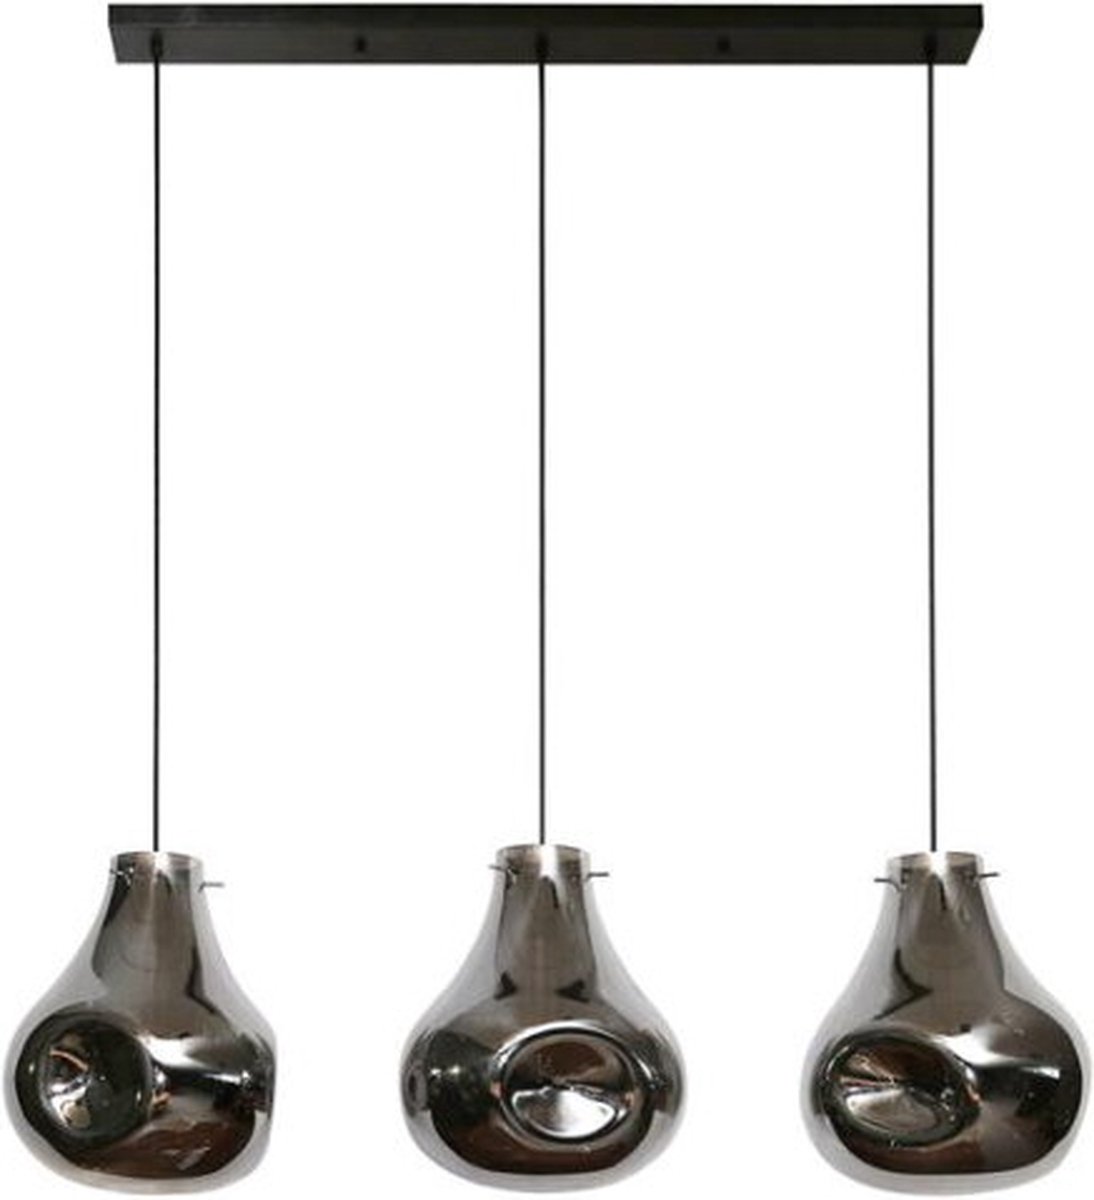 Hanglamp Dent glass 3 lampen - Artic zwart